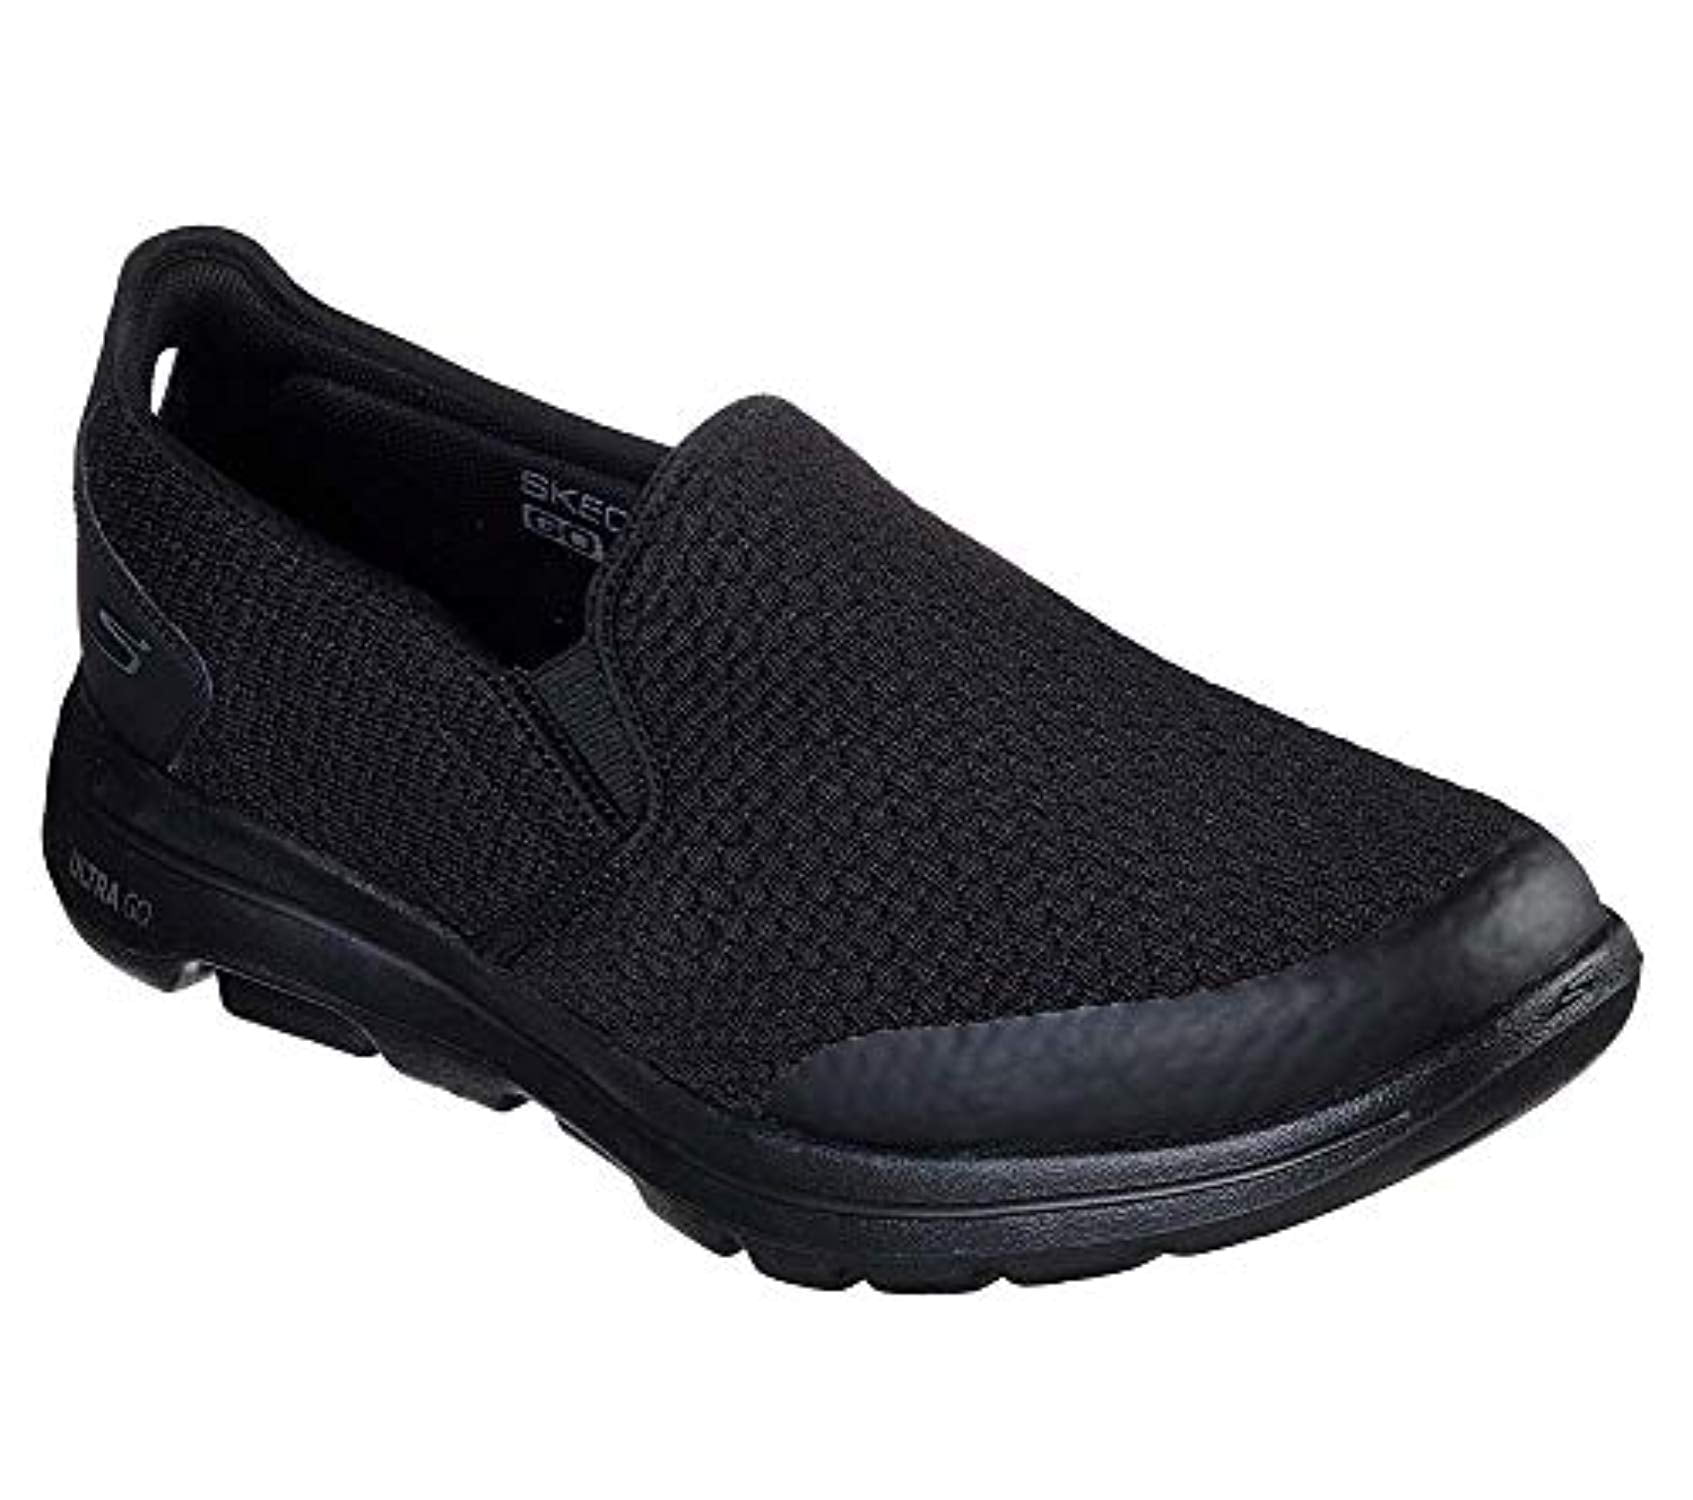 Skechers Skechers Men S Go Walk Apprize Shoe Black Extra Wide Us Walmart Com